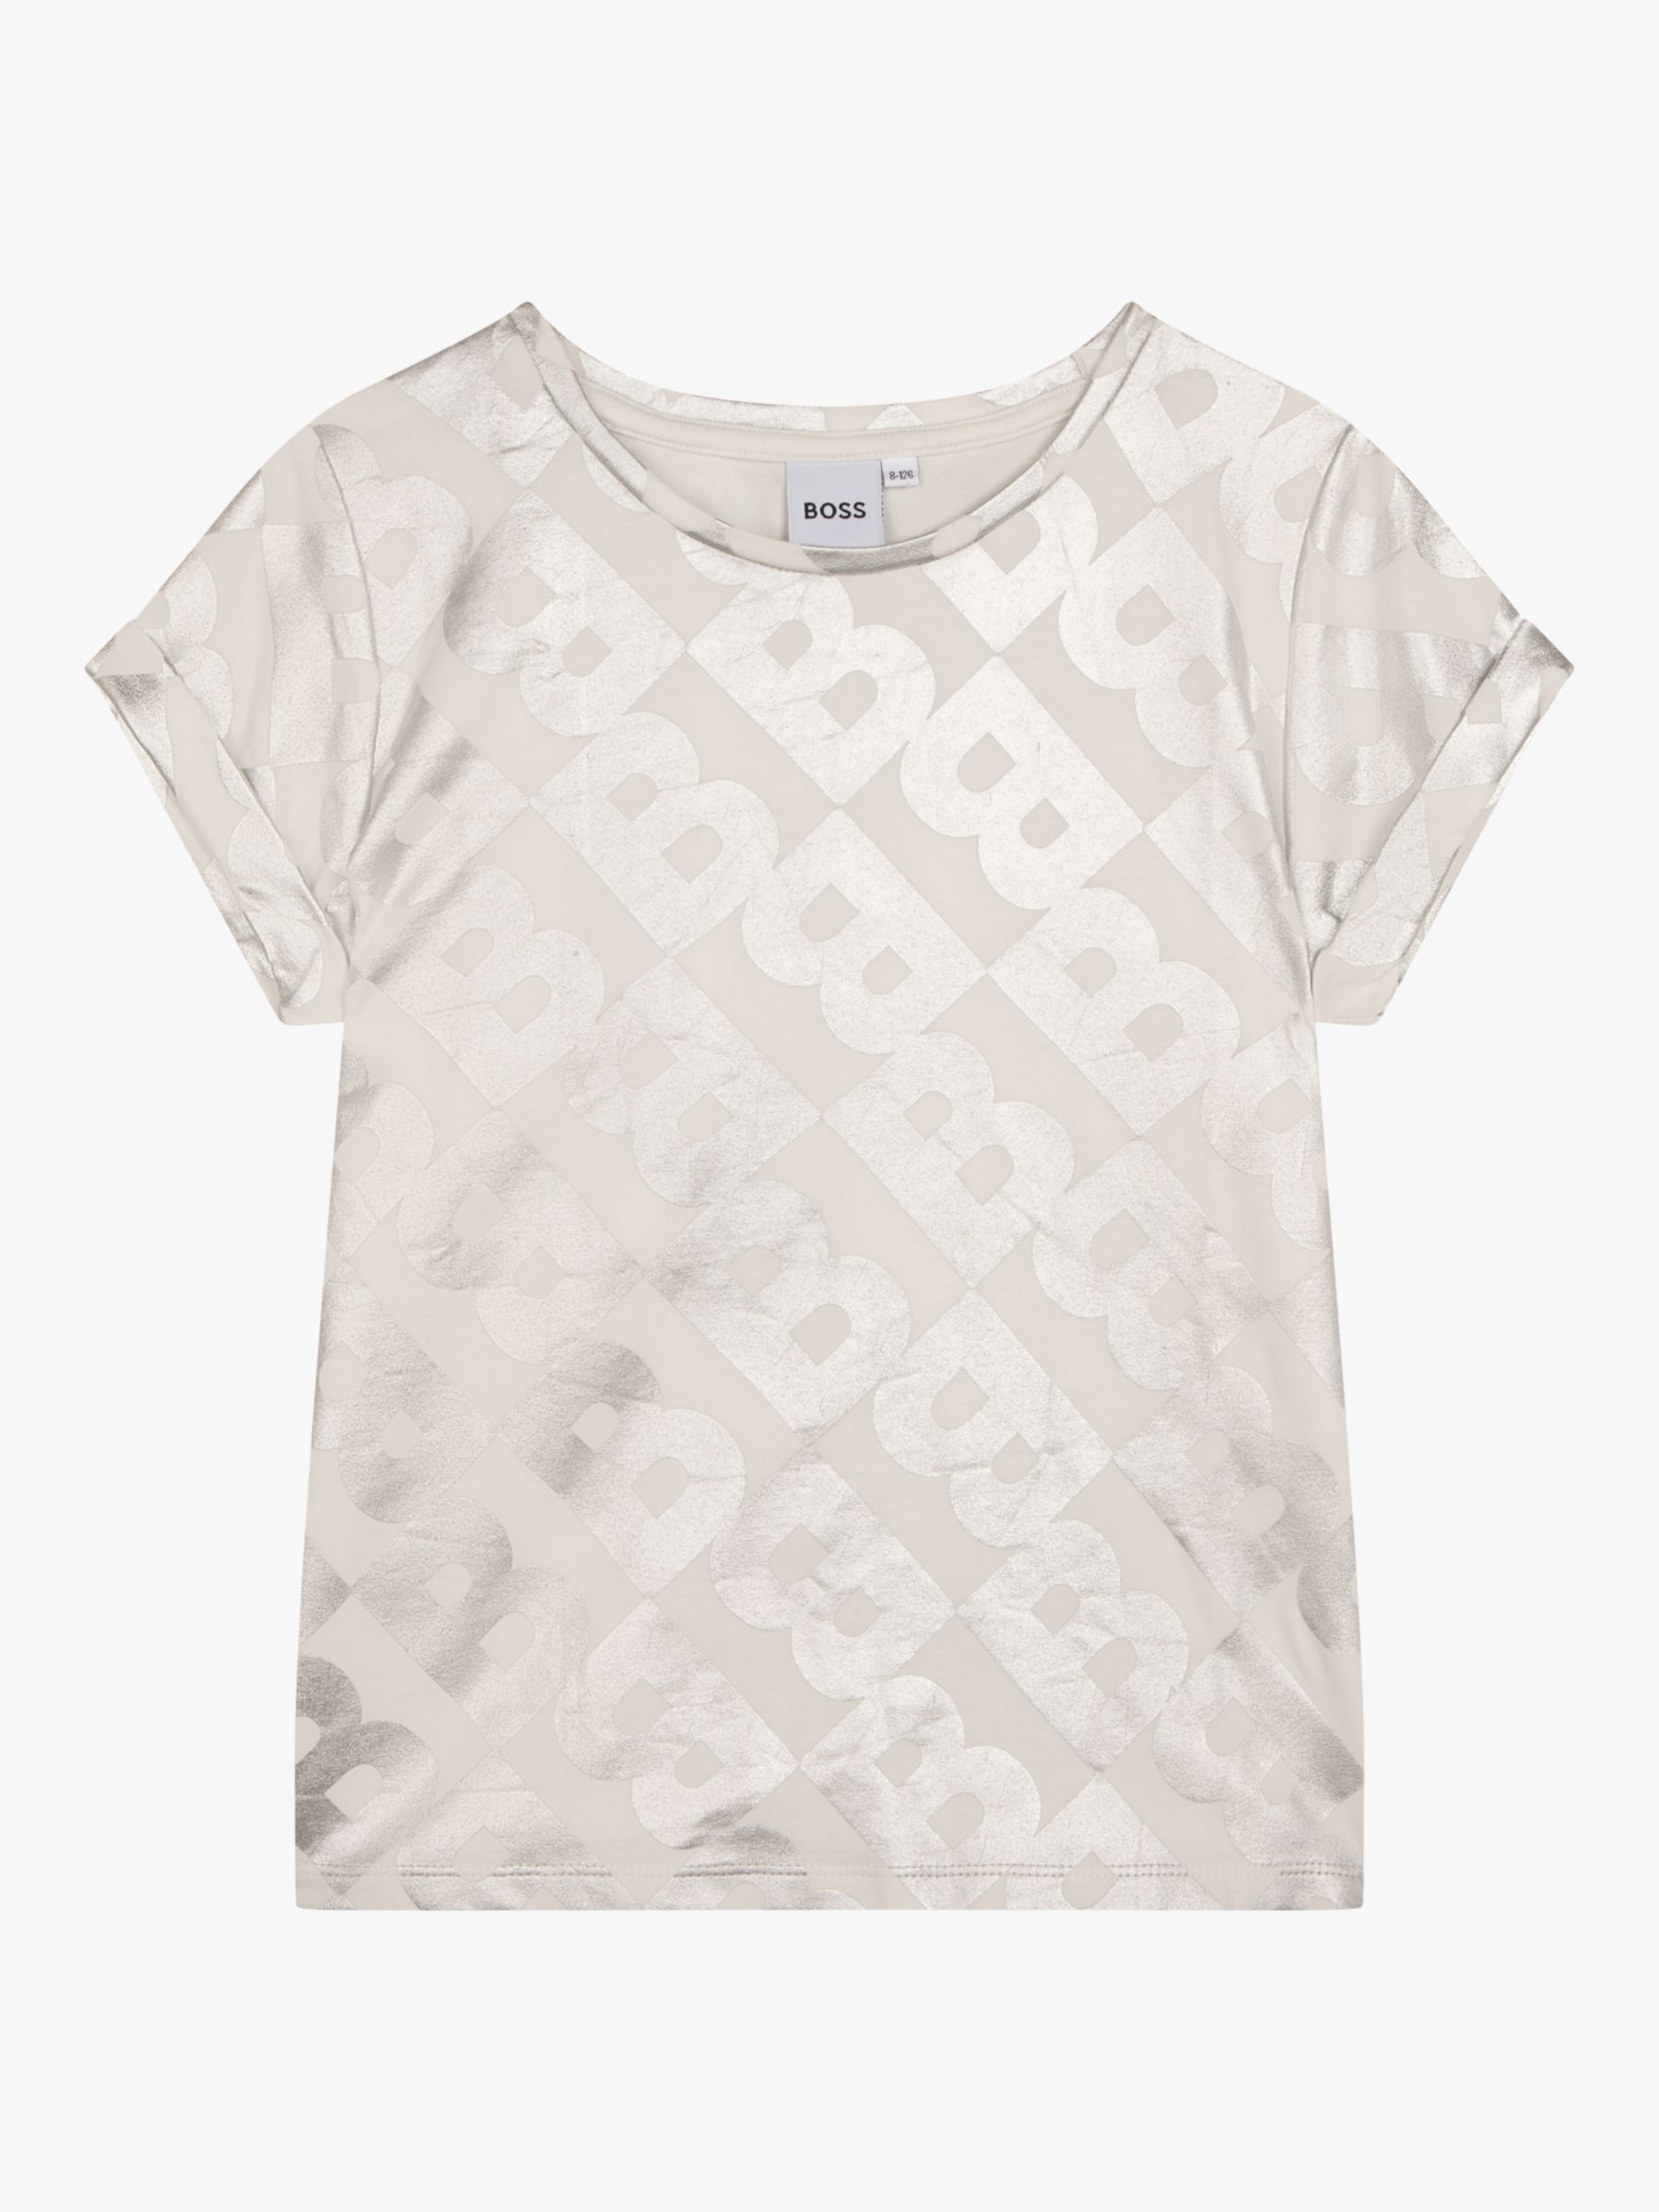 BOSS Kids' Metallic Monogram Logo T-Shirt, White, 4 years